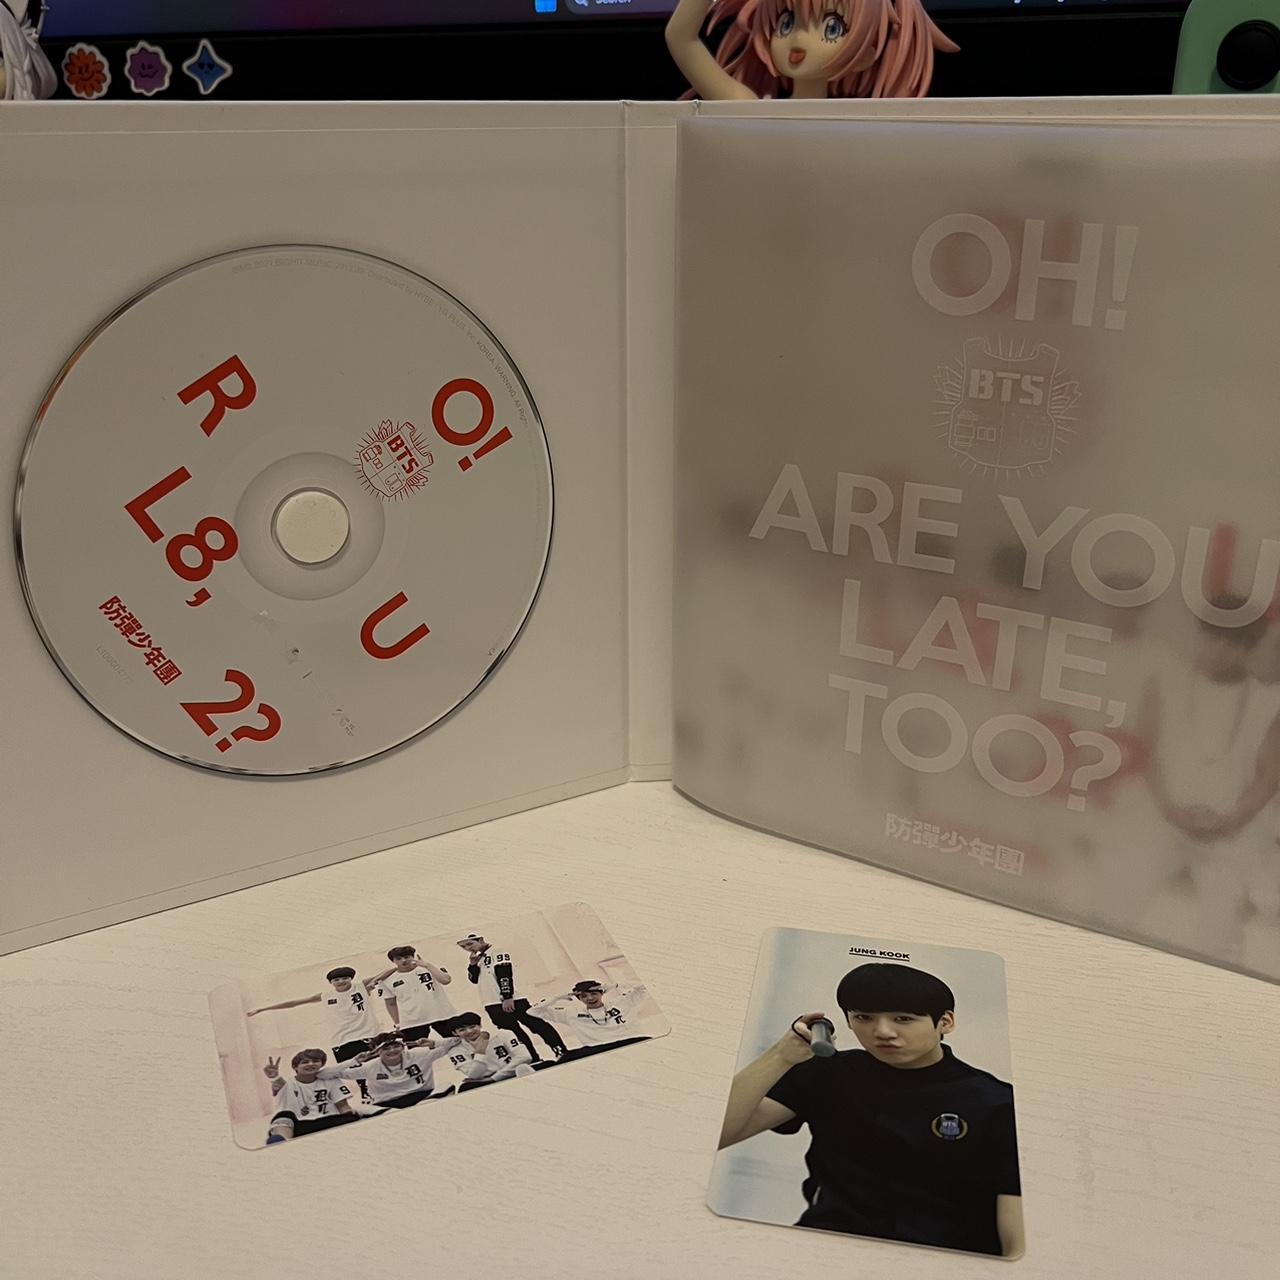 Bts stickers 💜 Set of 6 randomly chosen BTS - Depop